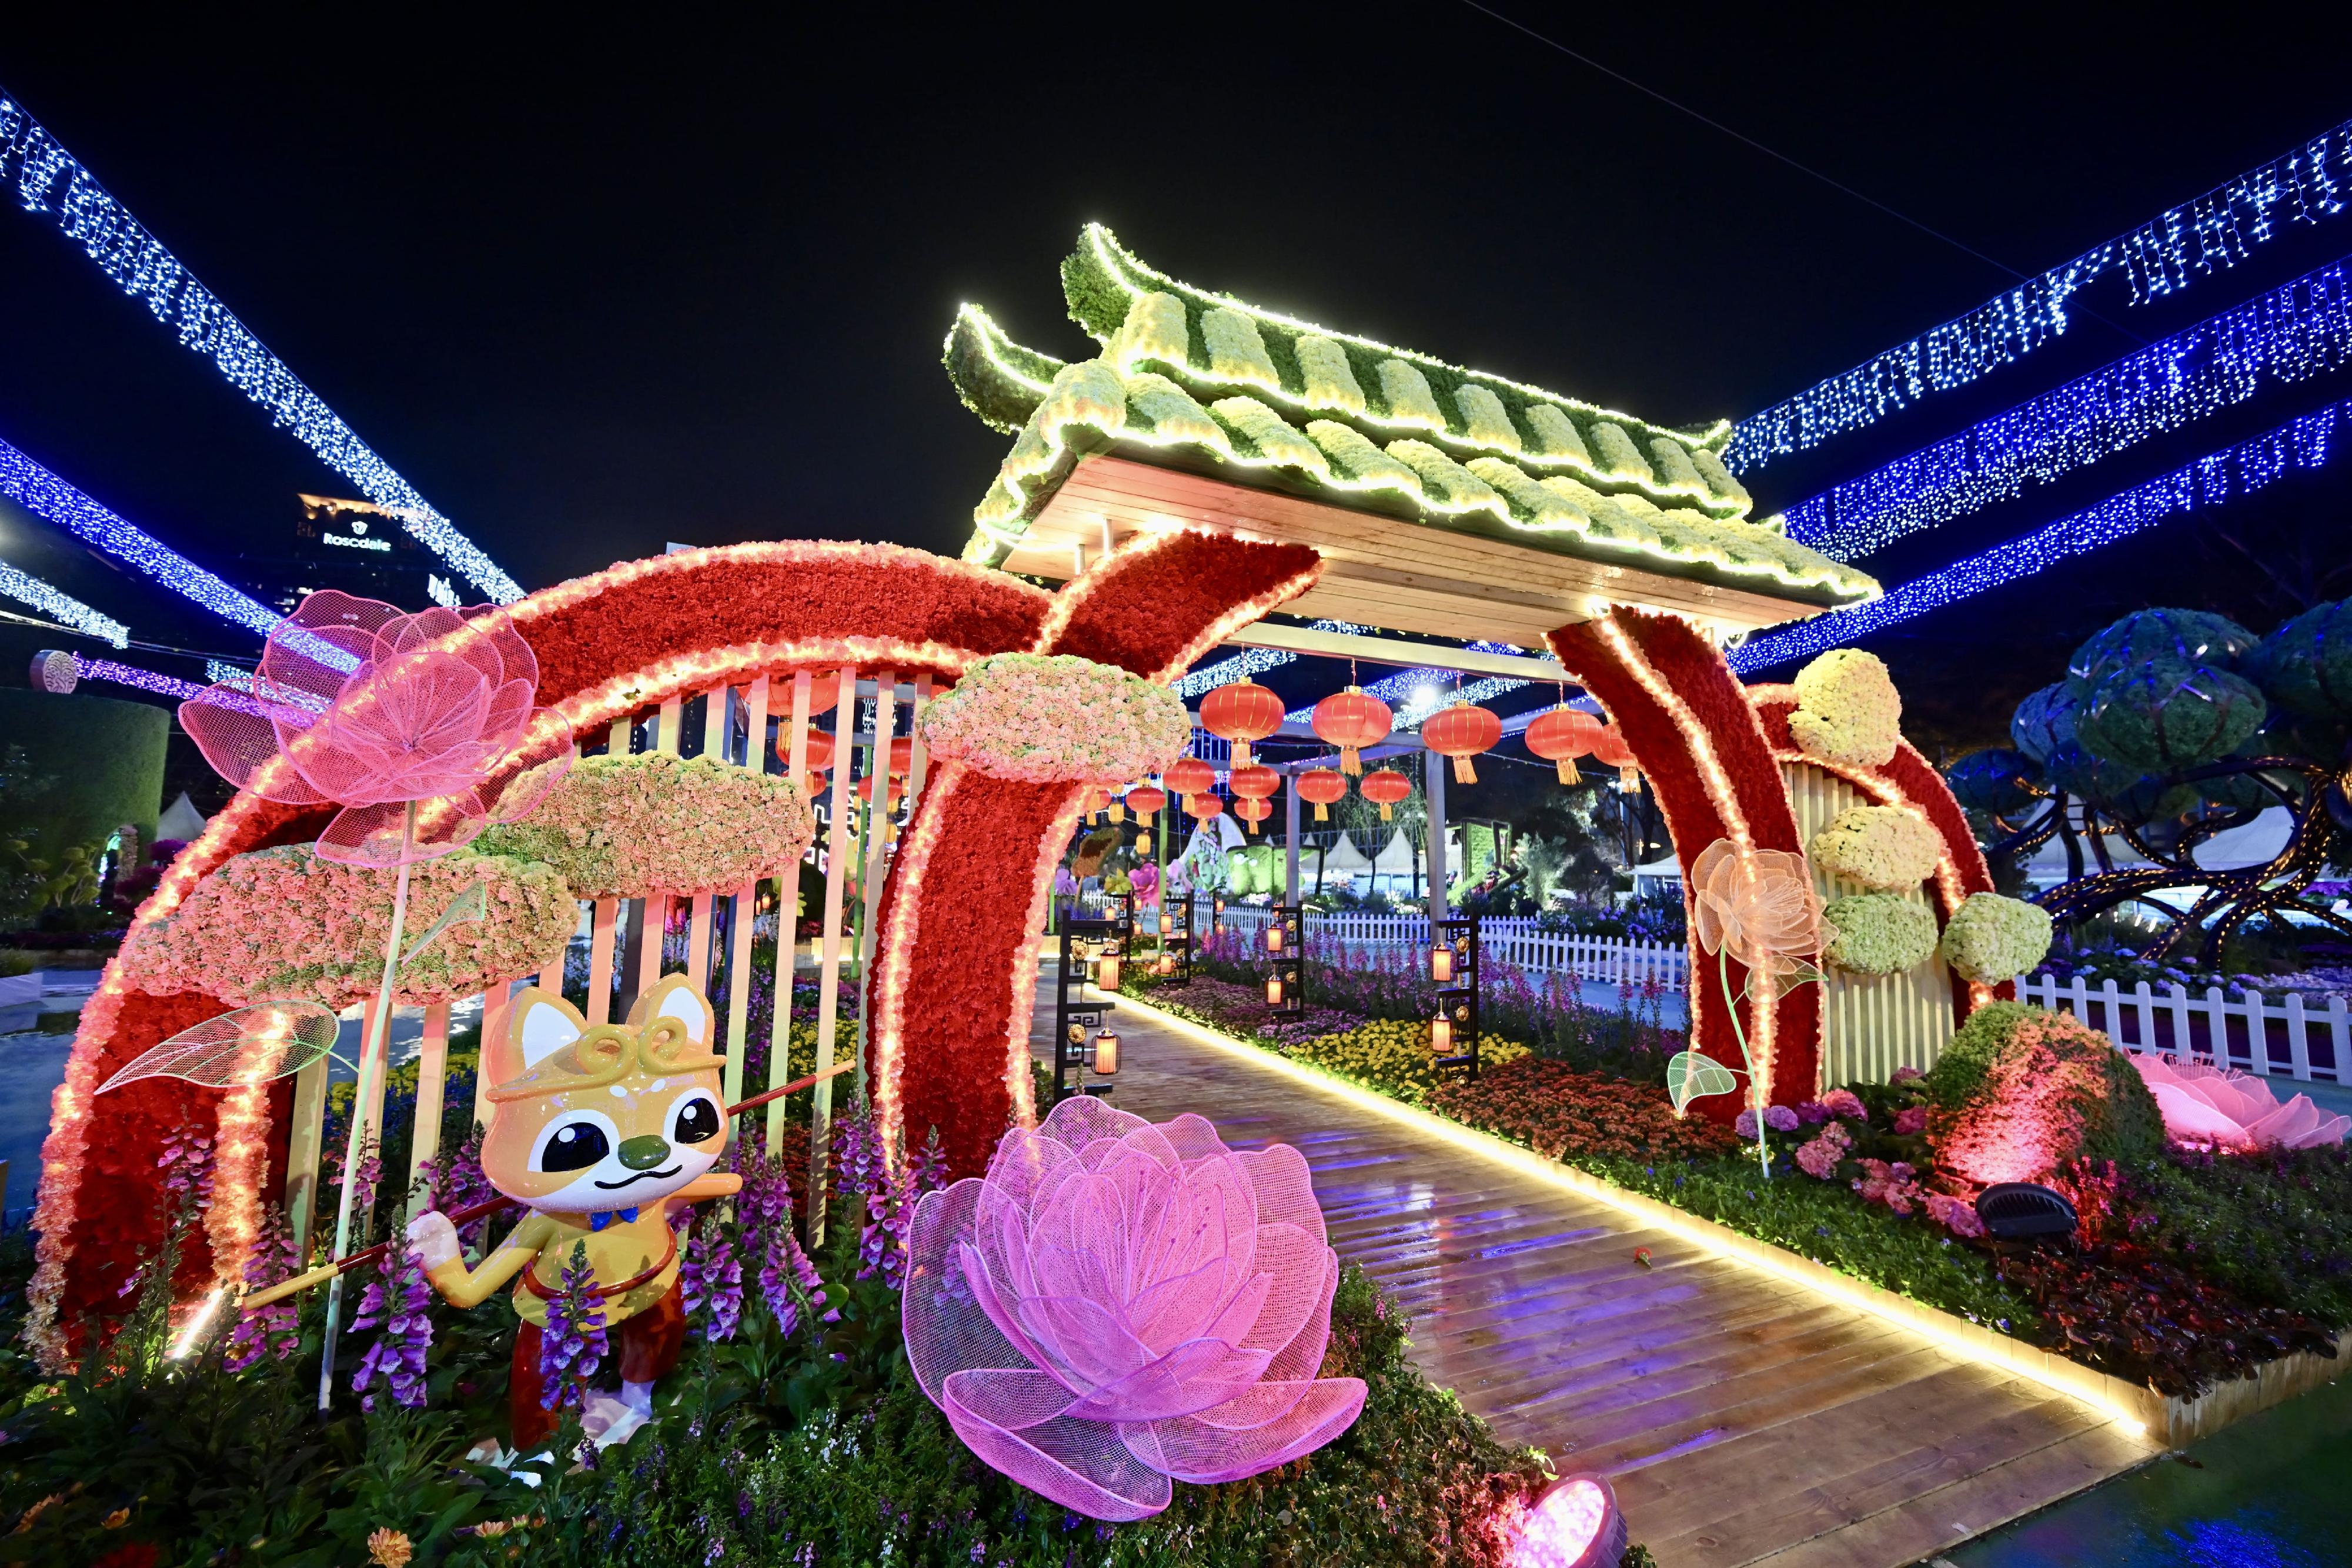 二○二四年香港花卉展覽（花展）明日（三月十五日）至三月二十四日在維多利亞公園舉行。今年花展的主題花是香彩雀，以「雀躍全城」為主題。晚上各個大型園林造景均加入燈光效果，讓遊人享受到不同的視覺體驗。圖示以《西遊記》為主題的園林造景。